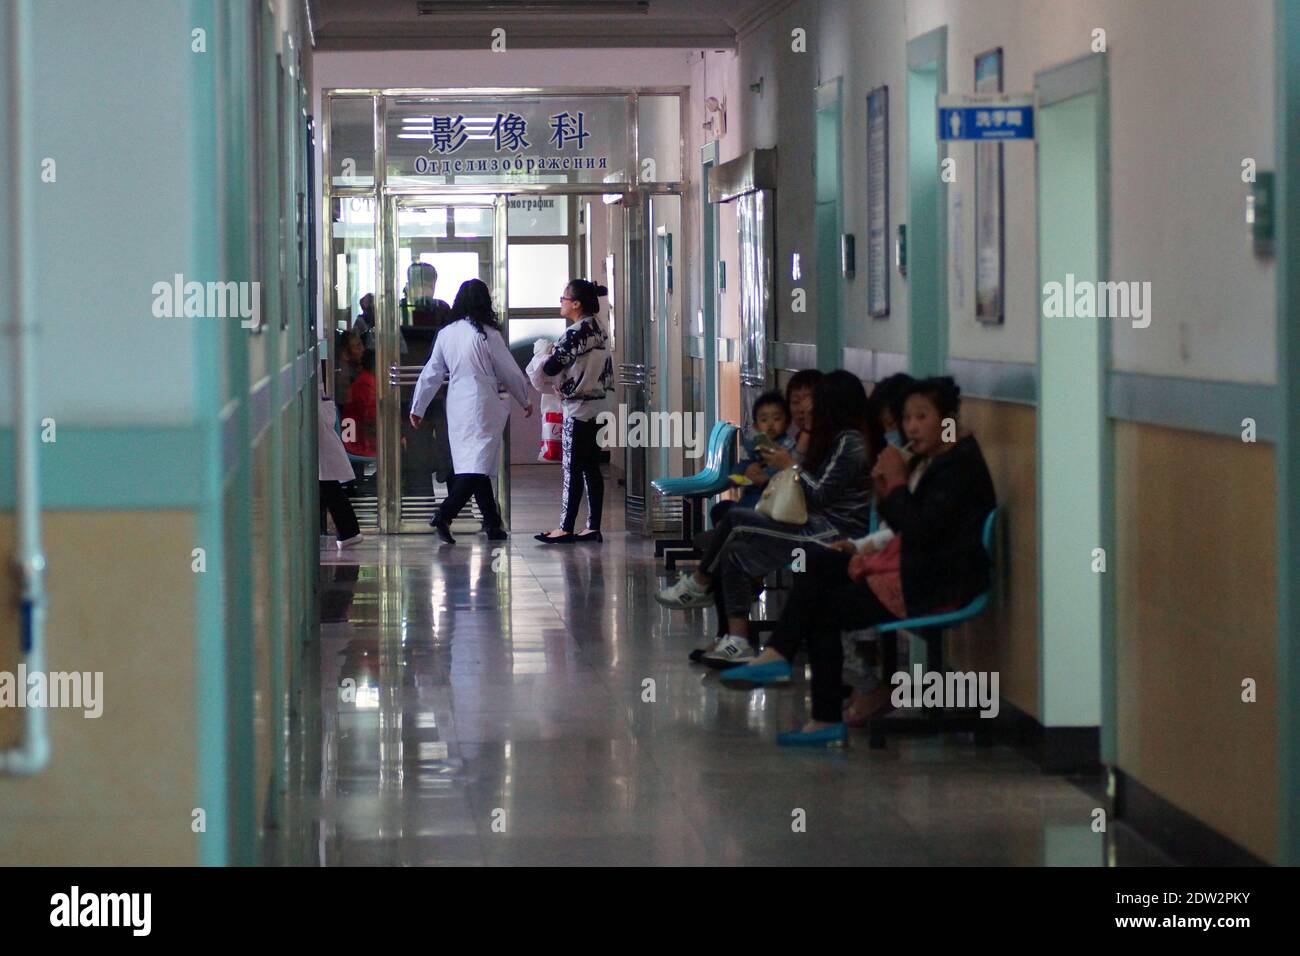 Dans les couloirs d'un hôpital chinois. Les patients attendent un rendez-vous. Hôpital de Tanggangzi. Anshan, province de Liaoning, Chine, Asie. Banque D'Images